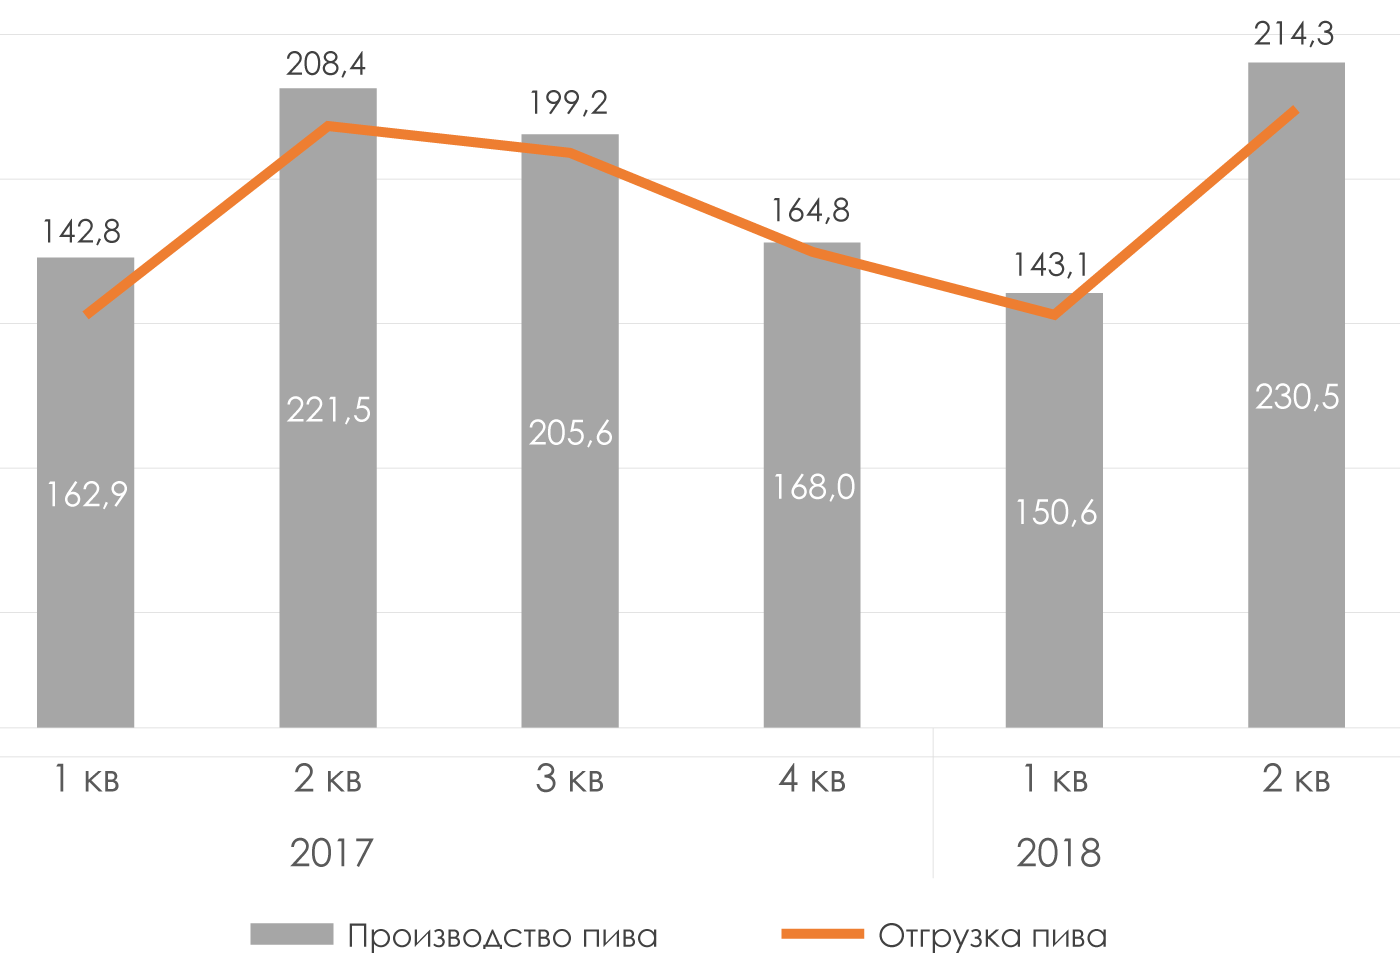 Производство-и-отгрузка-пива-2017-2018-гг